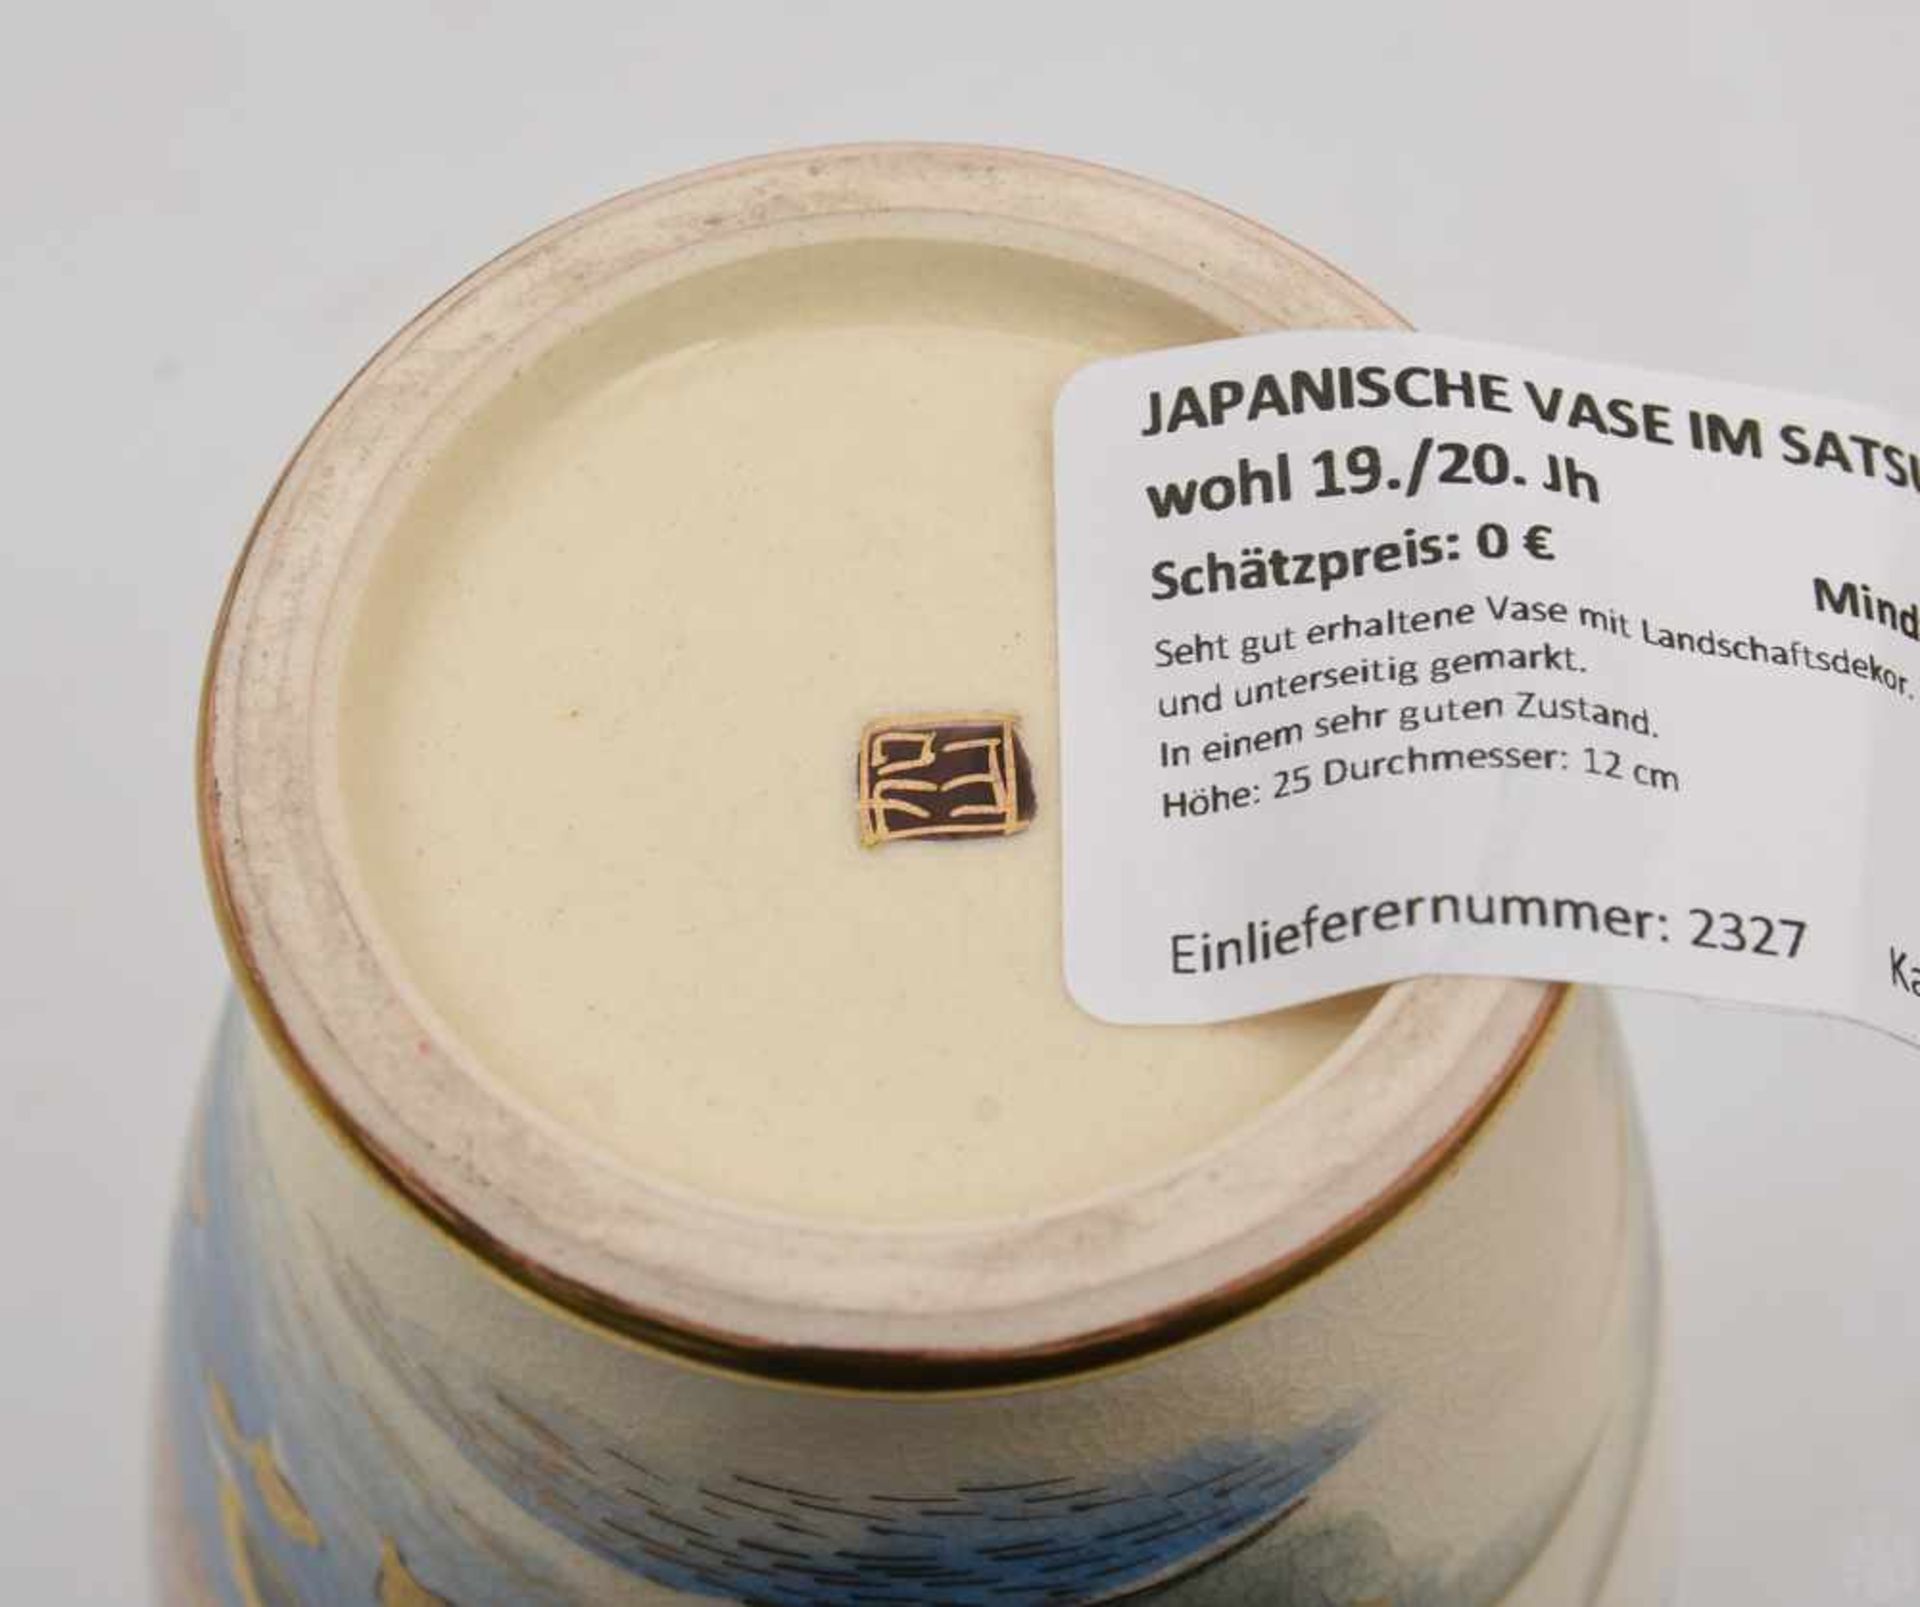 JAPANISCHE VASE IM SATSUMA STIL, Japan, wohl 19./20. JhSeht gut erhaltene Vase mit Landschaftsdekor. - Image 6 of 6